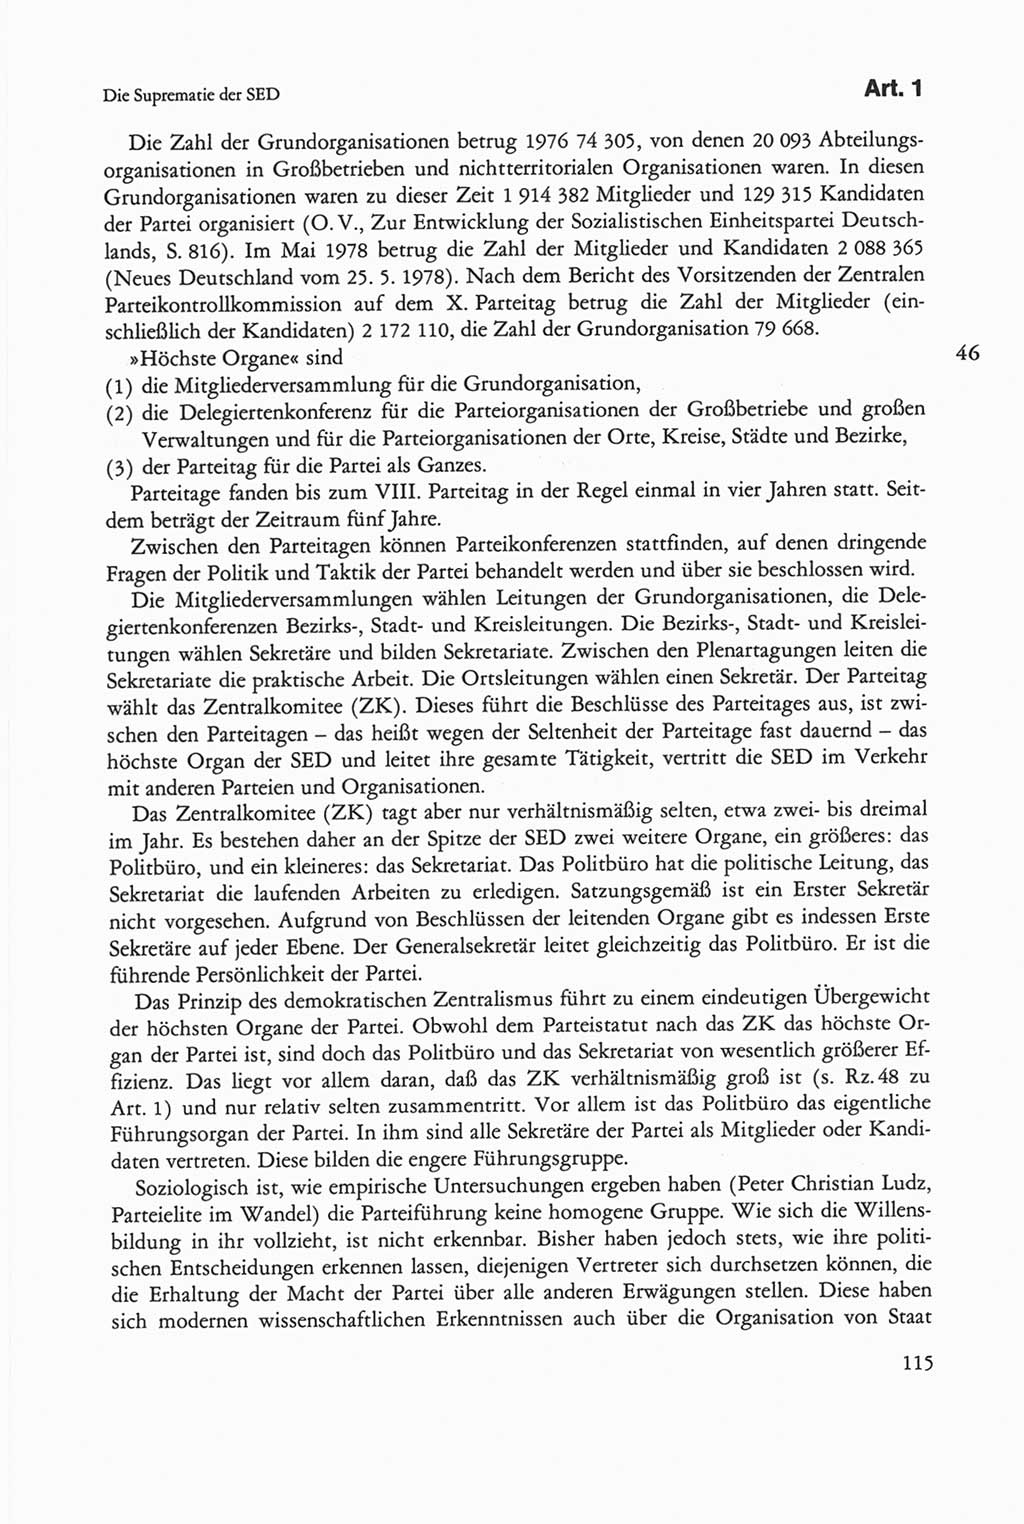 Die sozialistische Verfassung der Deutschen Demokratischen Republik (DDR), Kommentar 1982, Seite 115 (Soz. Verf. DDR Komm. 1982, S. 115)